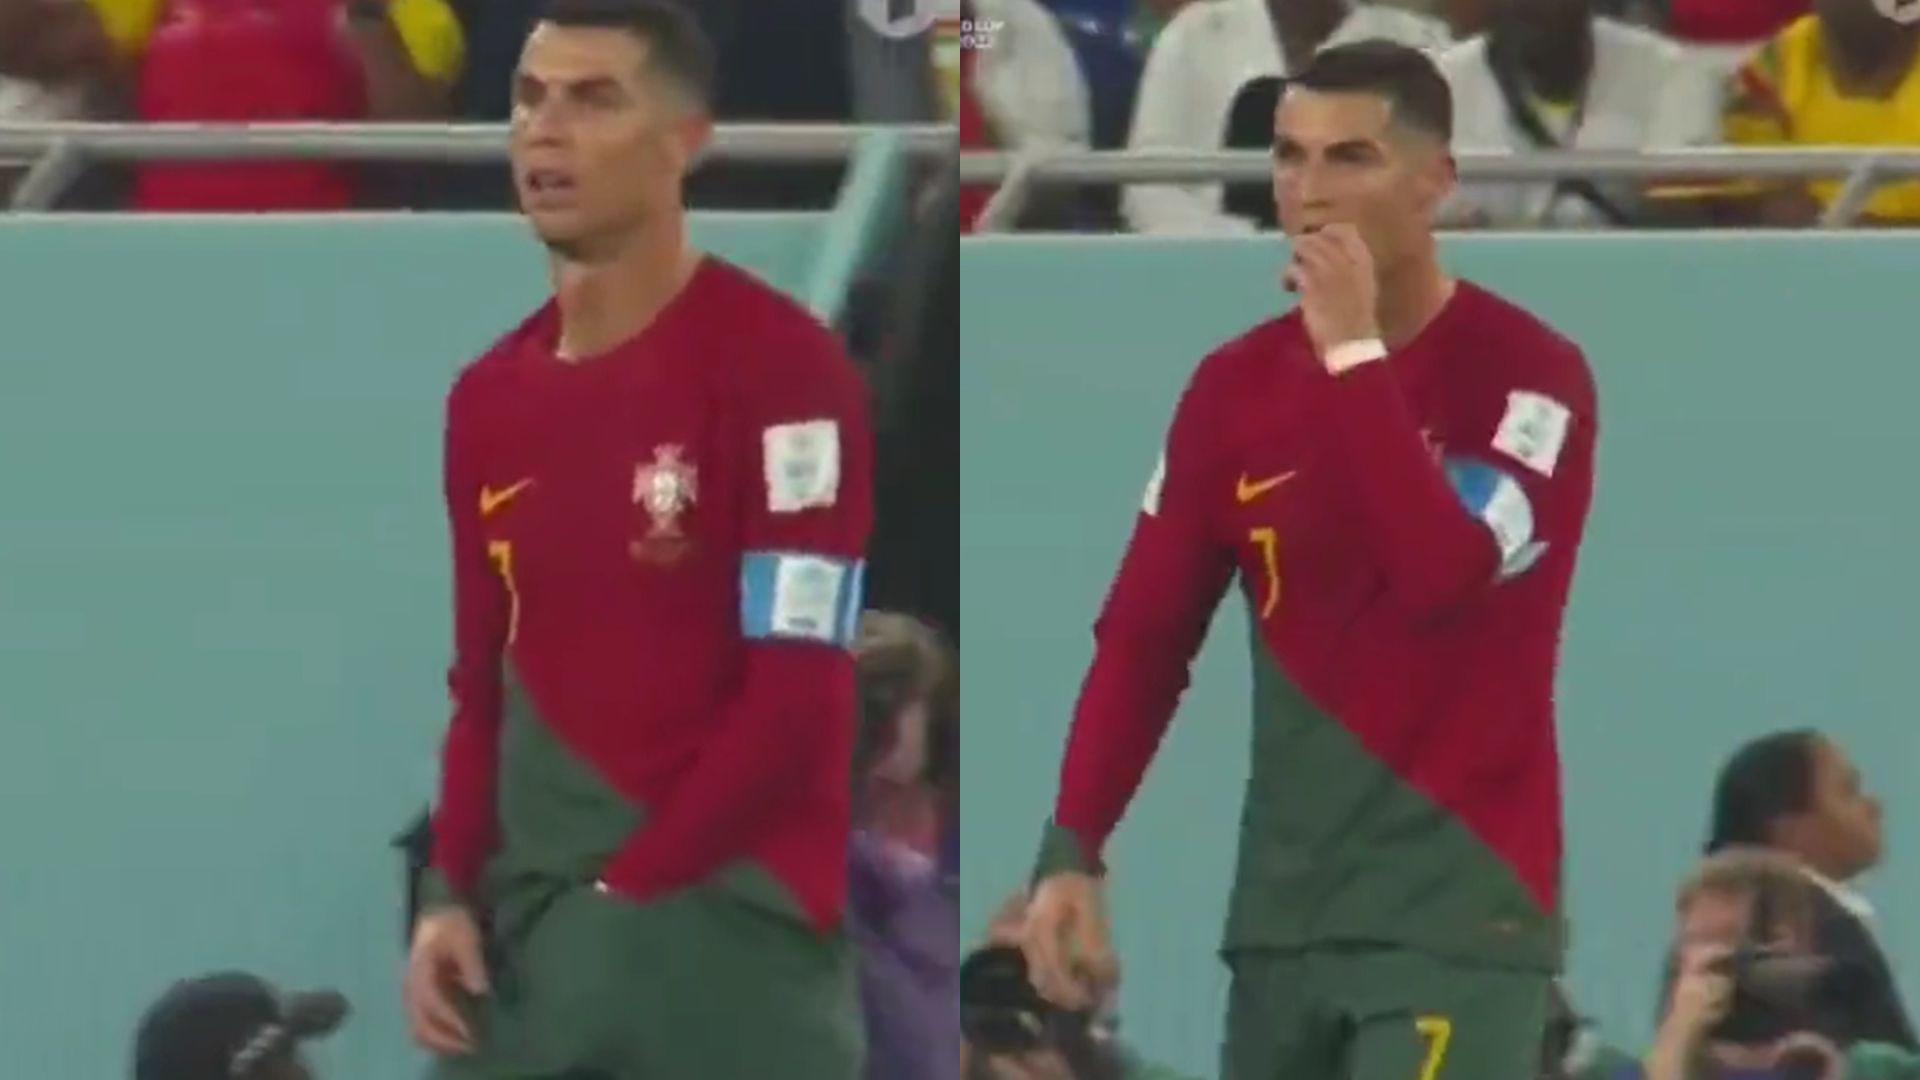 Cristiano Ronaldo tira “lanchinho” da cueca durante jogo e viraliza; Portugal explica